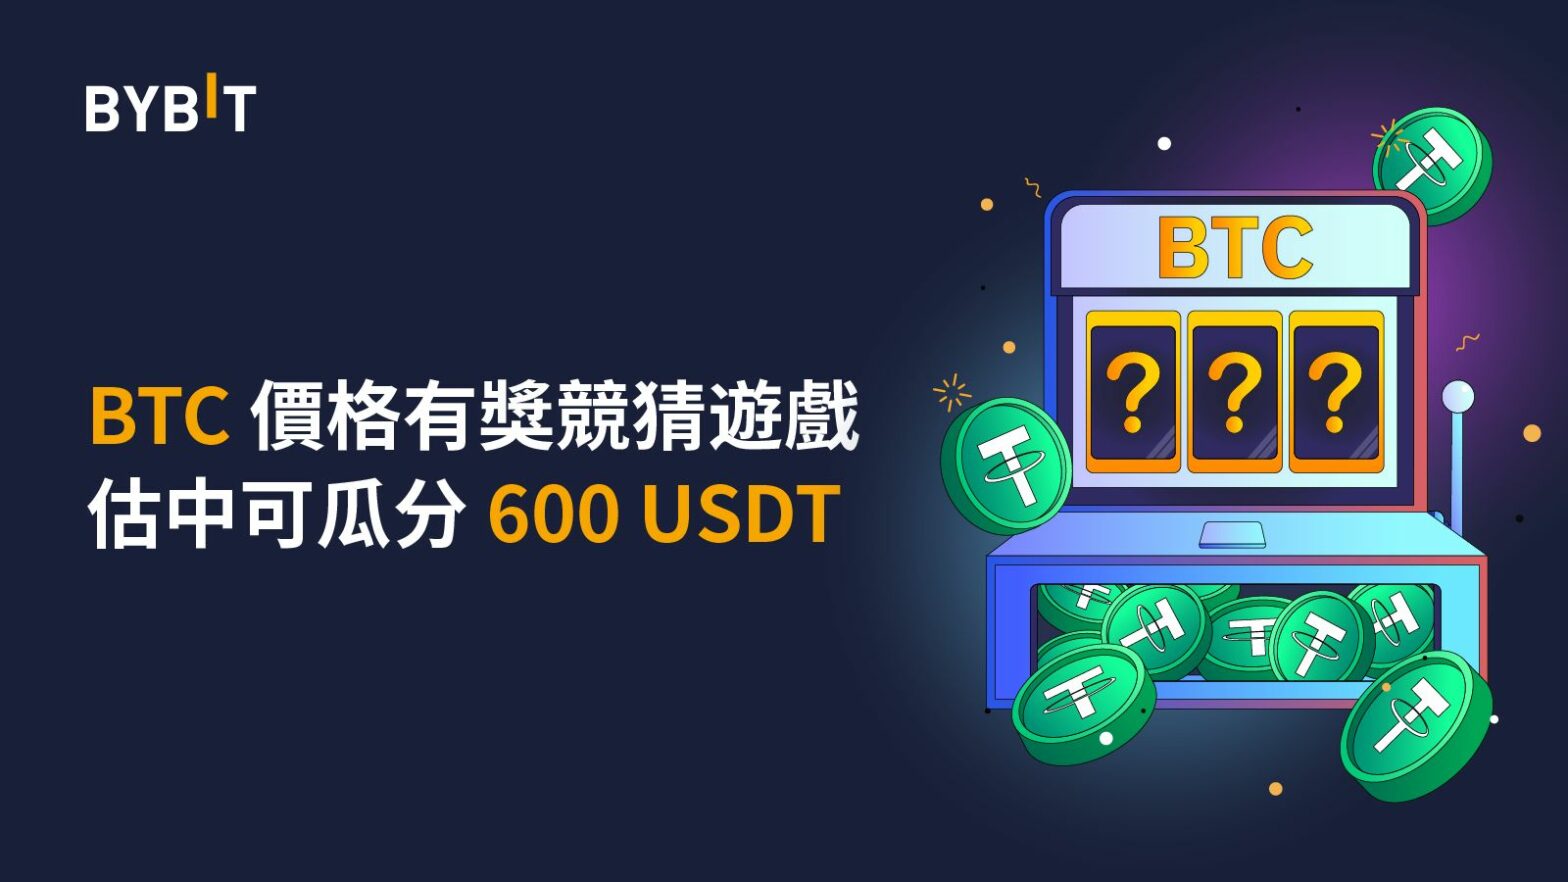 華語區專屬活動： BTC 價格有獎競猜遊戲上線！估中可瓜分 600 USDT！